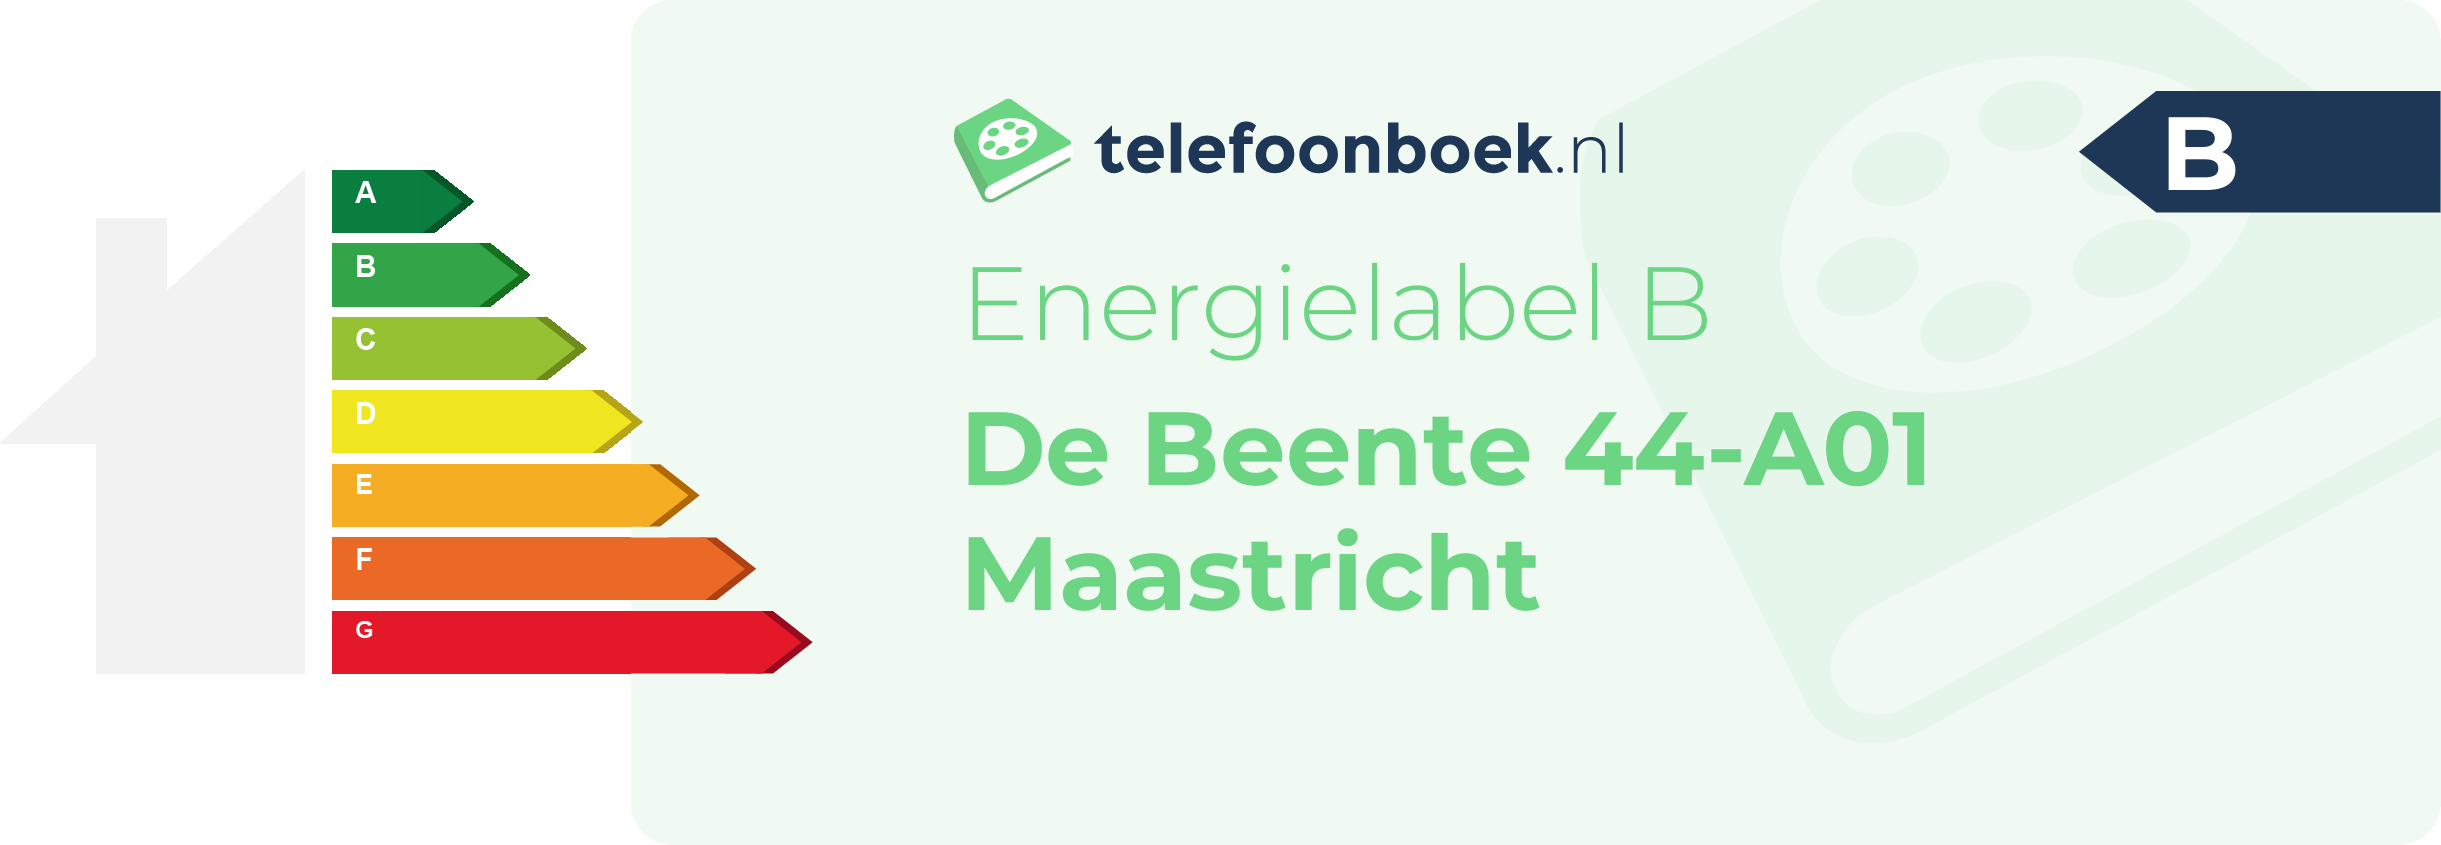 Energielabel De Beente 44-A01 Maastricht